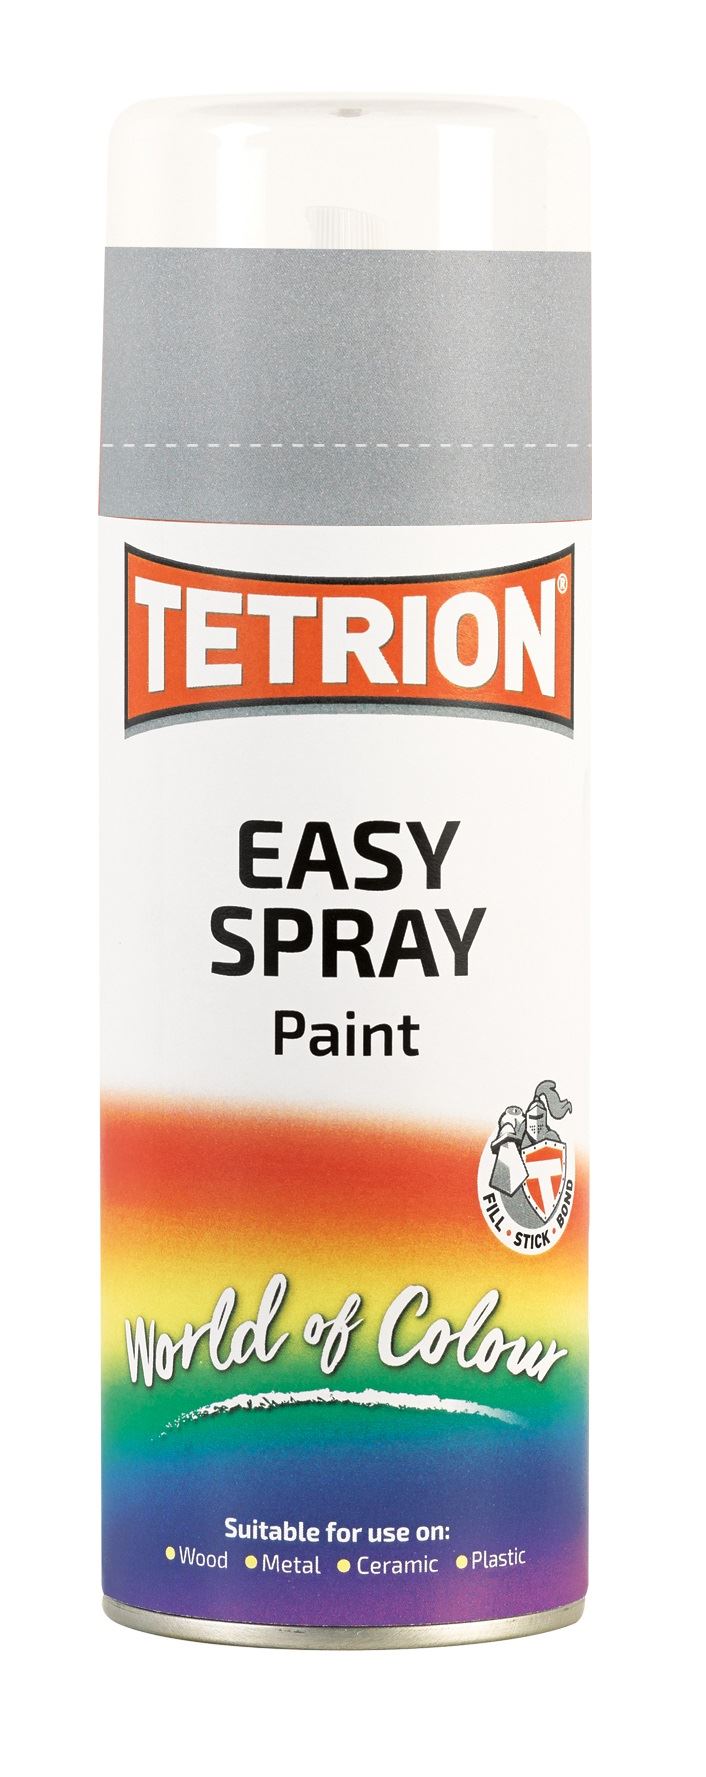 Tetrion Easy Spray Silver Paint - 400ml